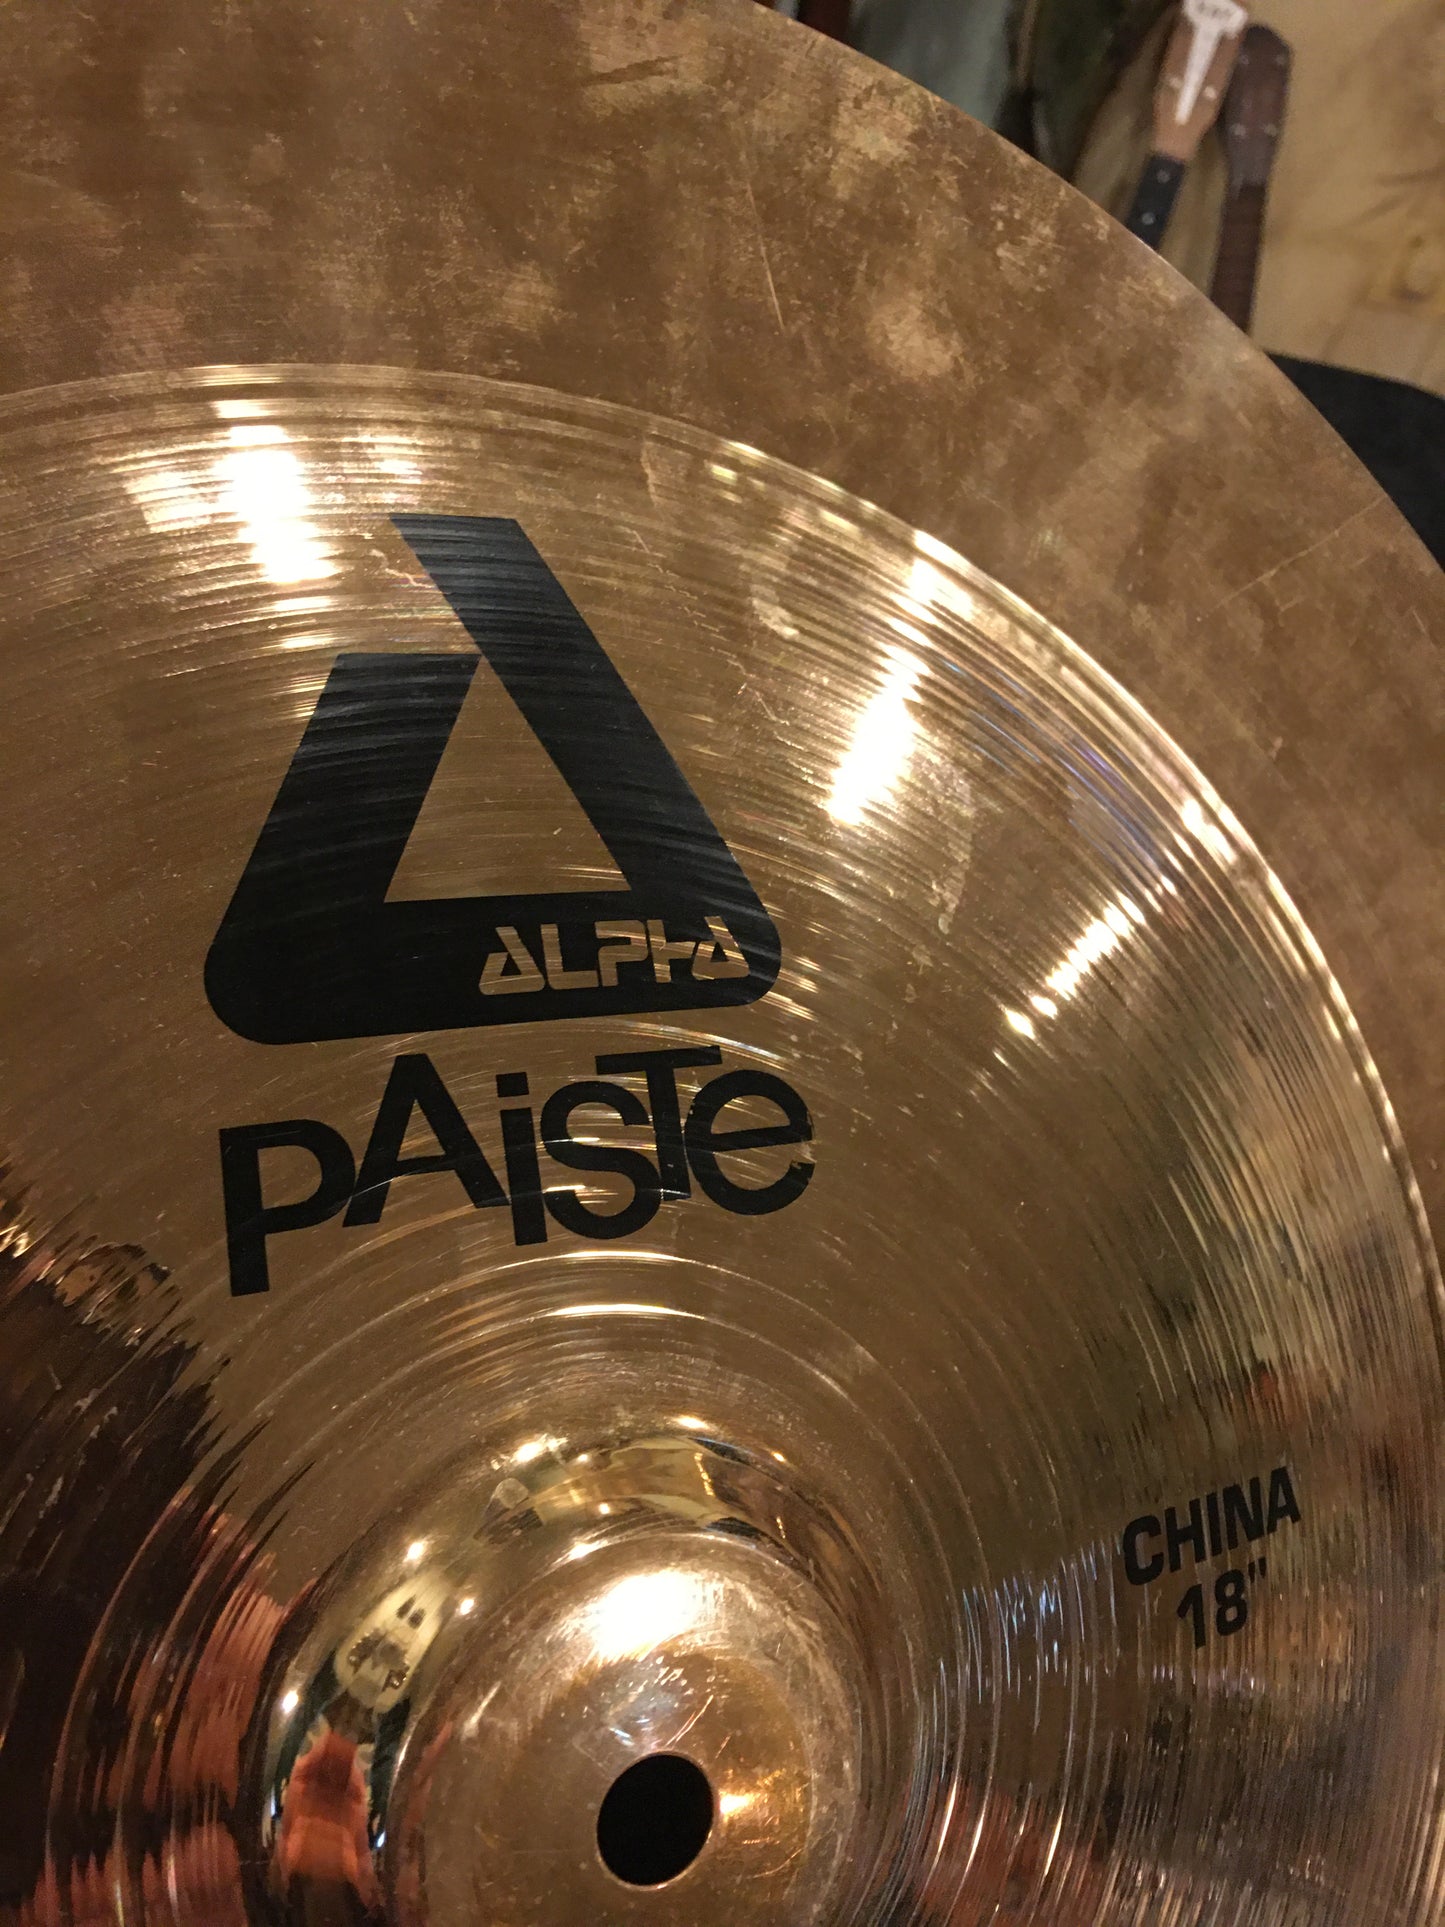 18" Paiste Alpha China Cymbal